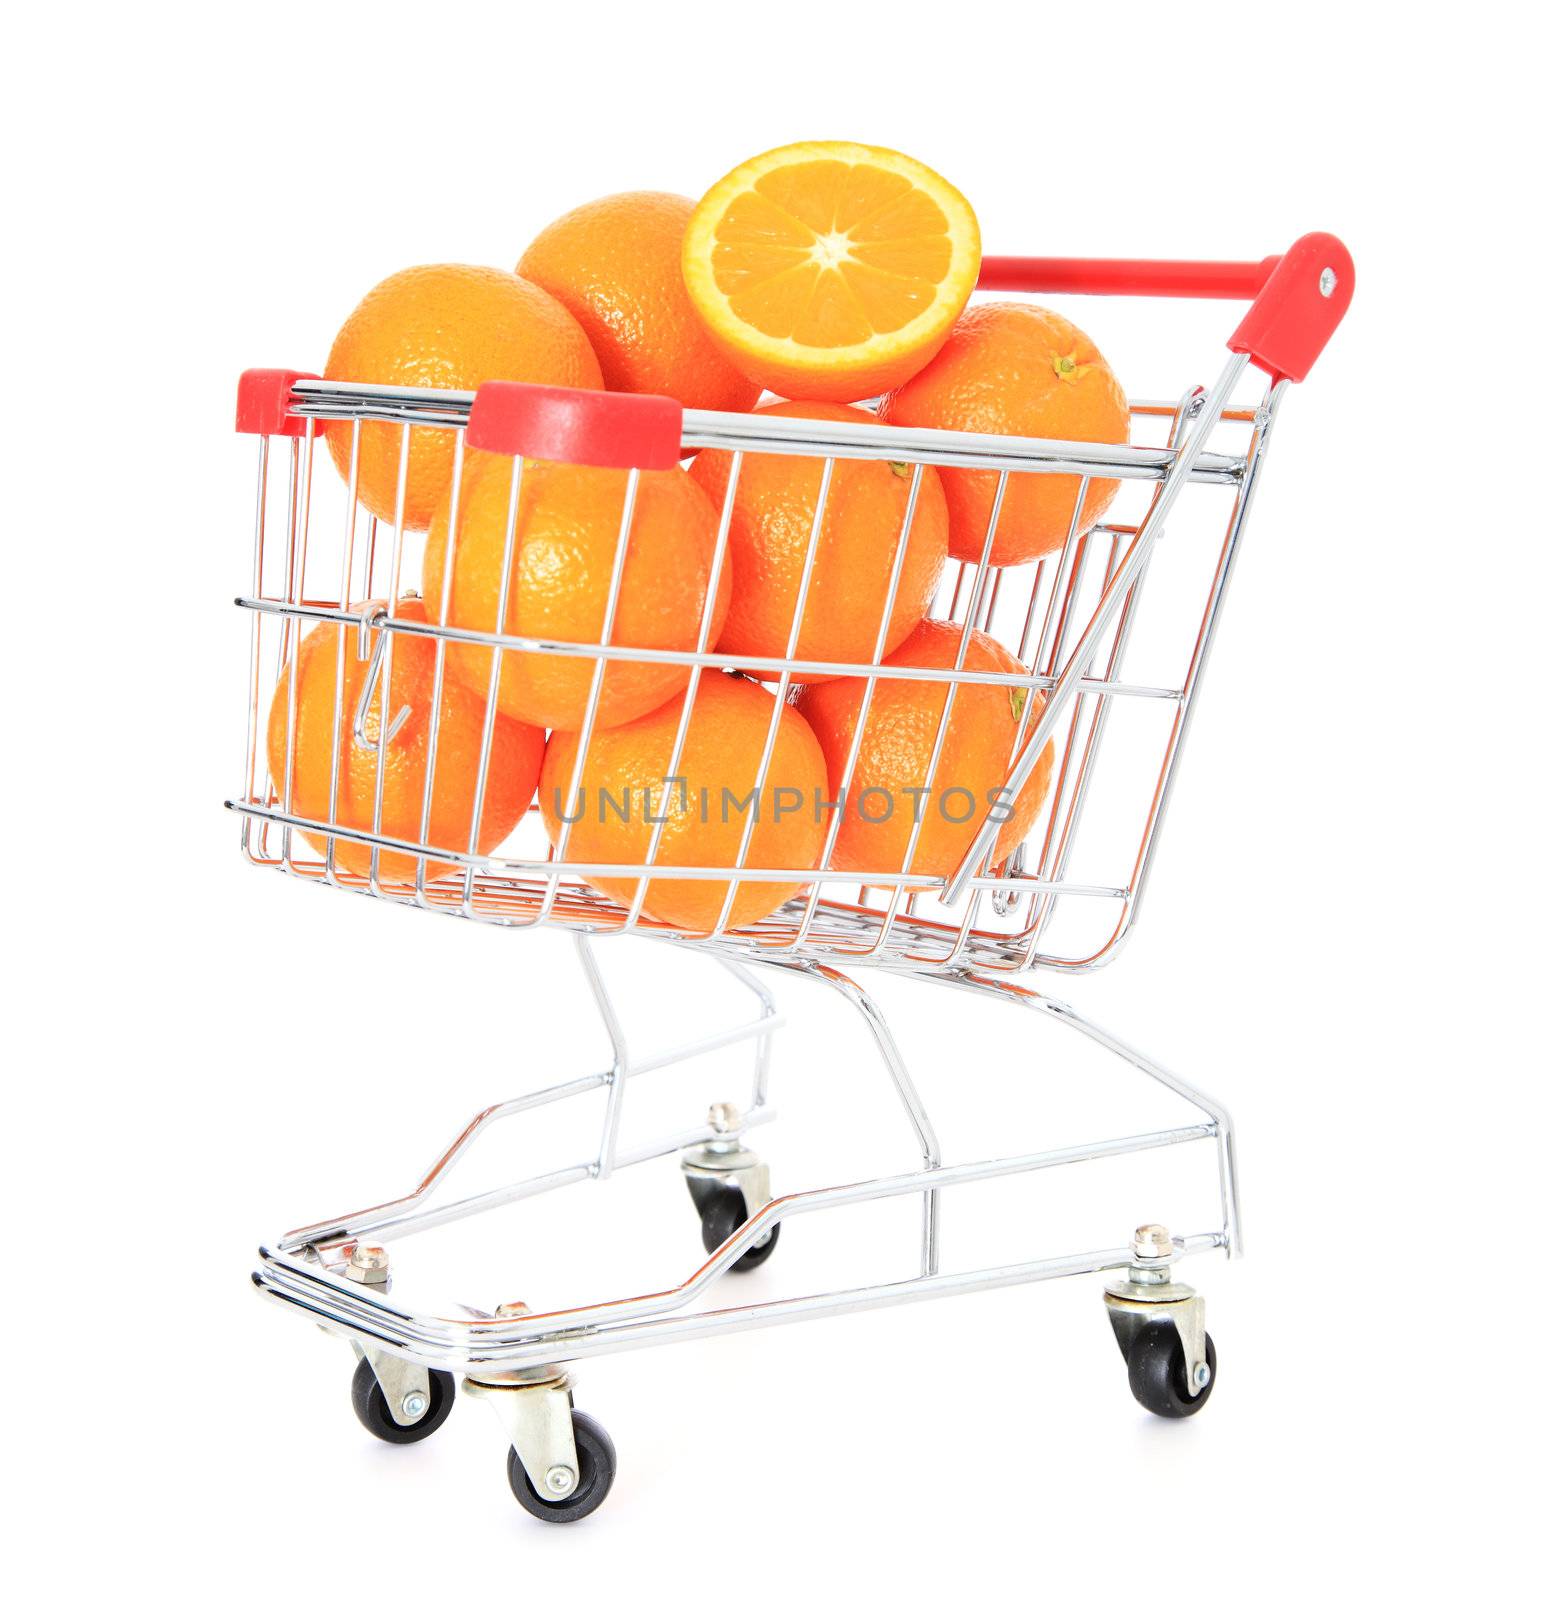 Shopping cart full of fine ripe oranges  All on white background